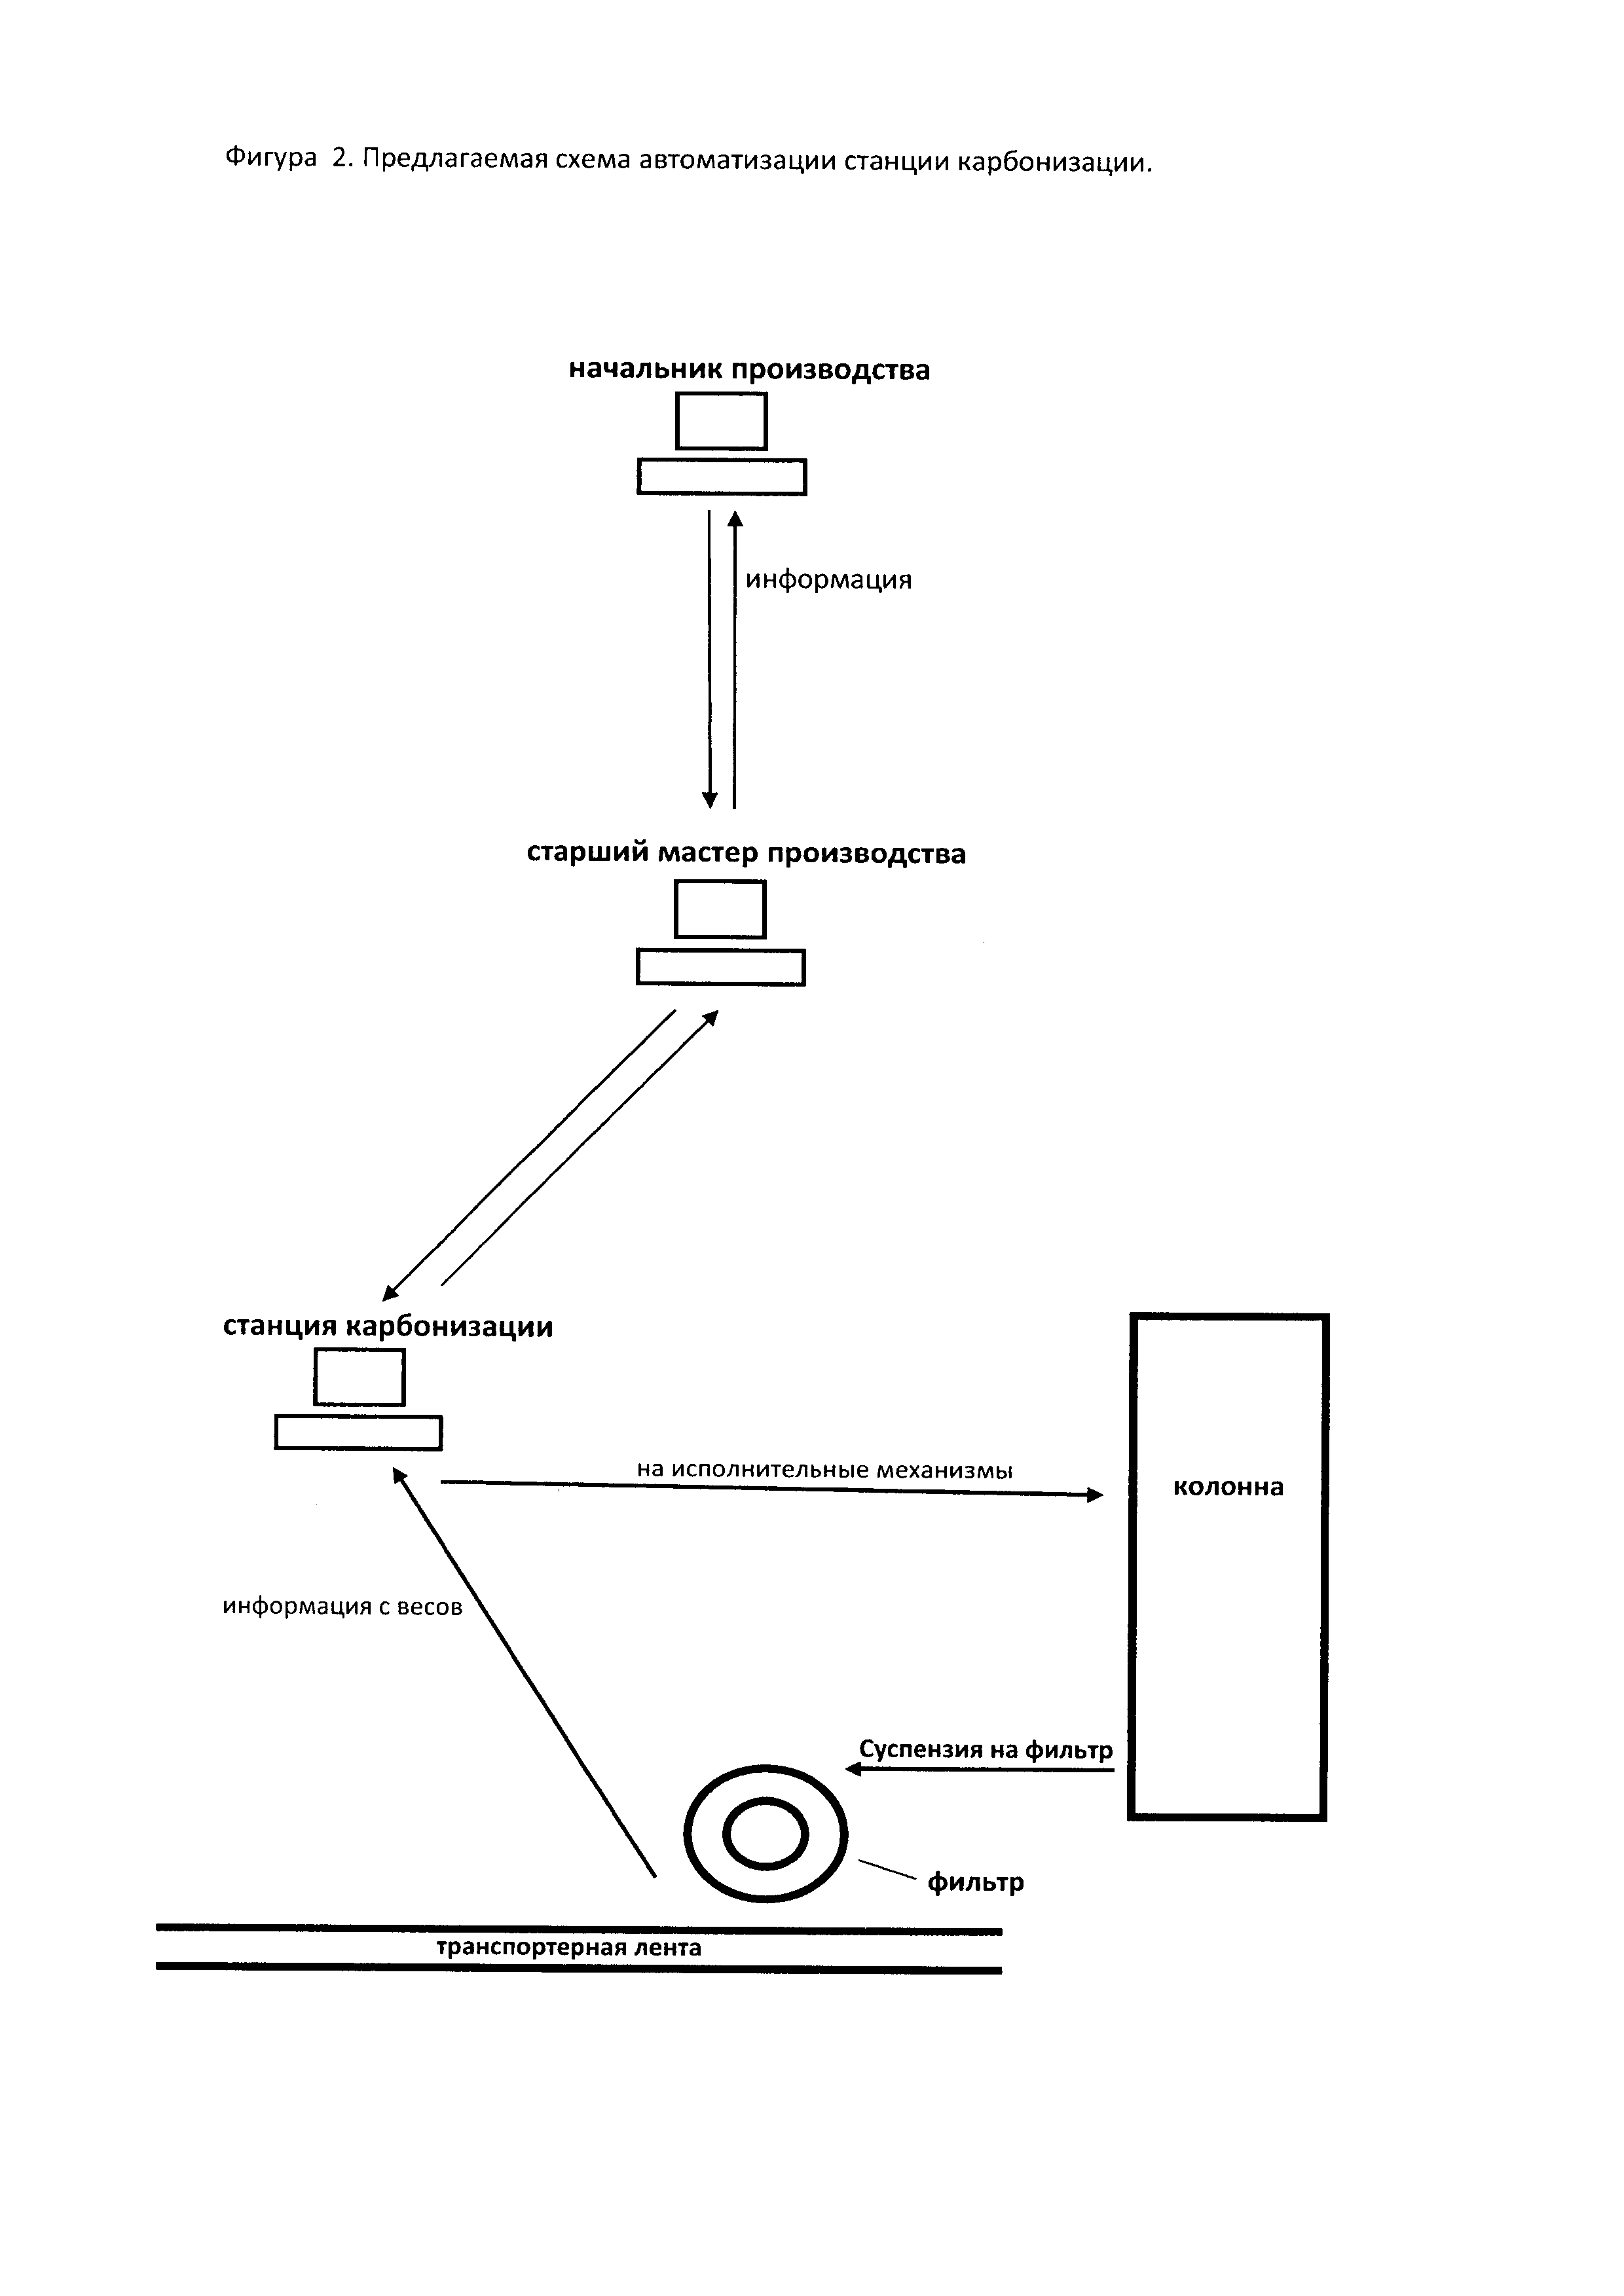 Схема производства кальцинированной соды